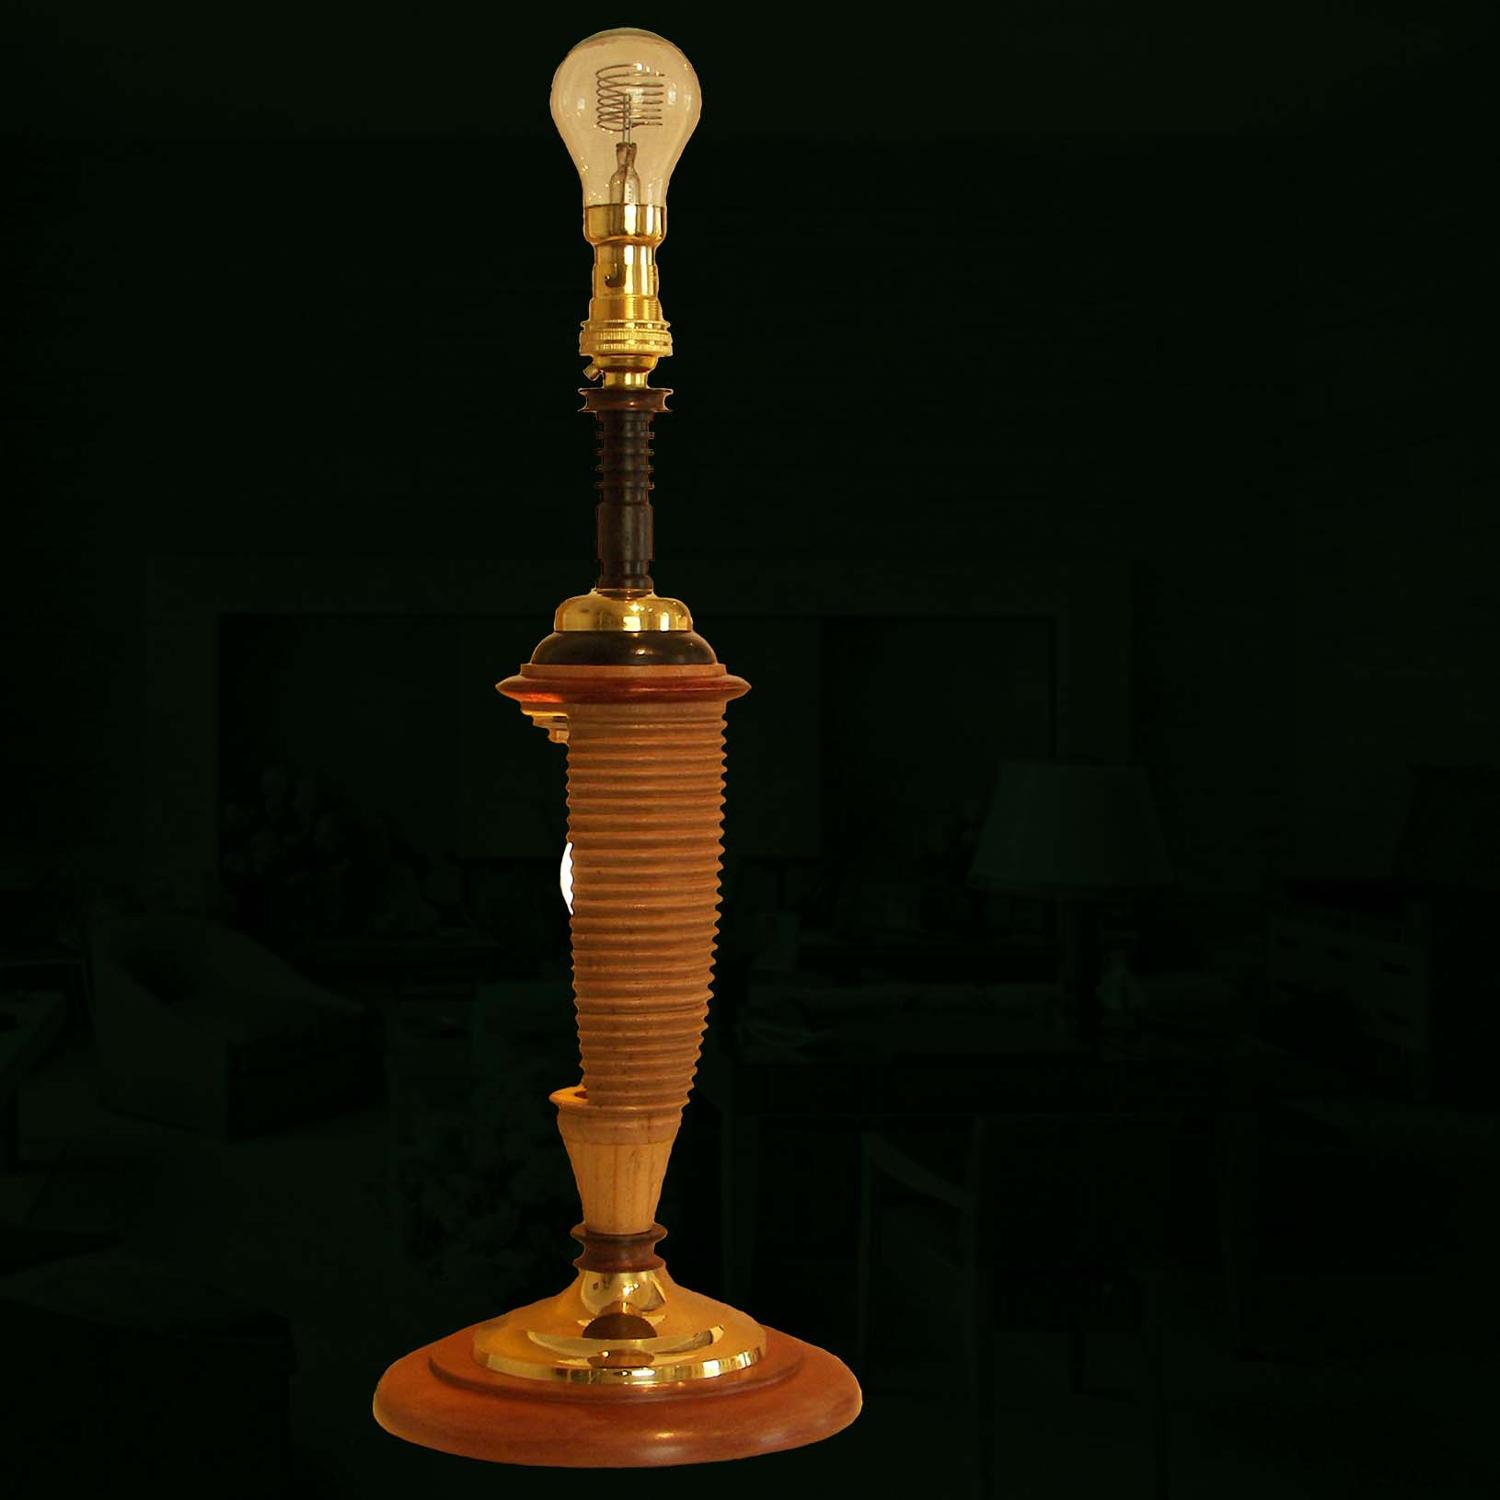 Unique lamp design - Trompe L’Oeil - by Gilles Bourlet Dartmouth